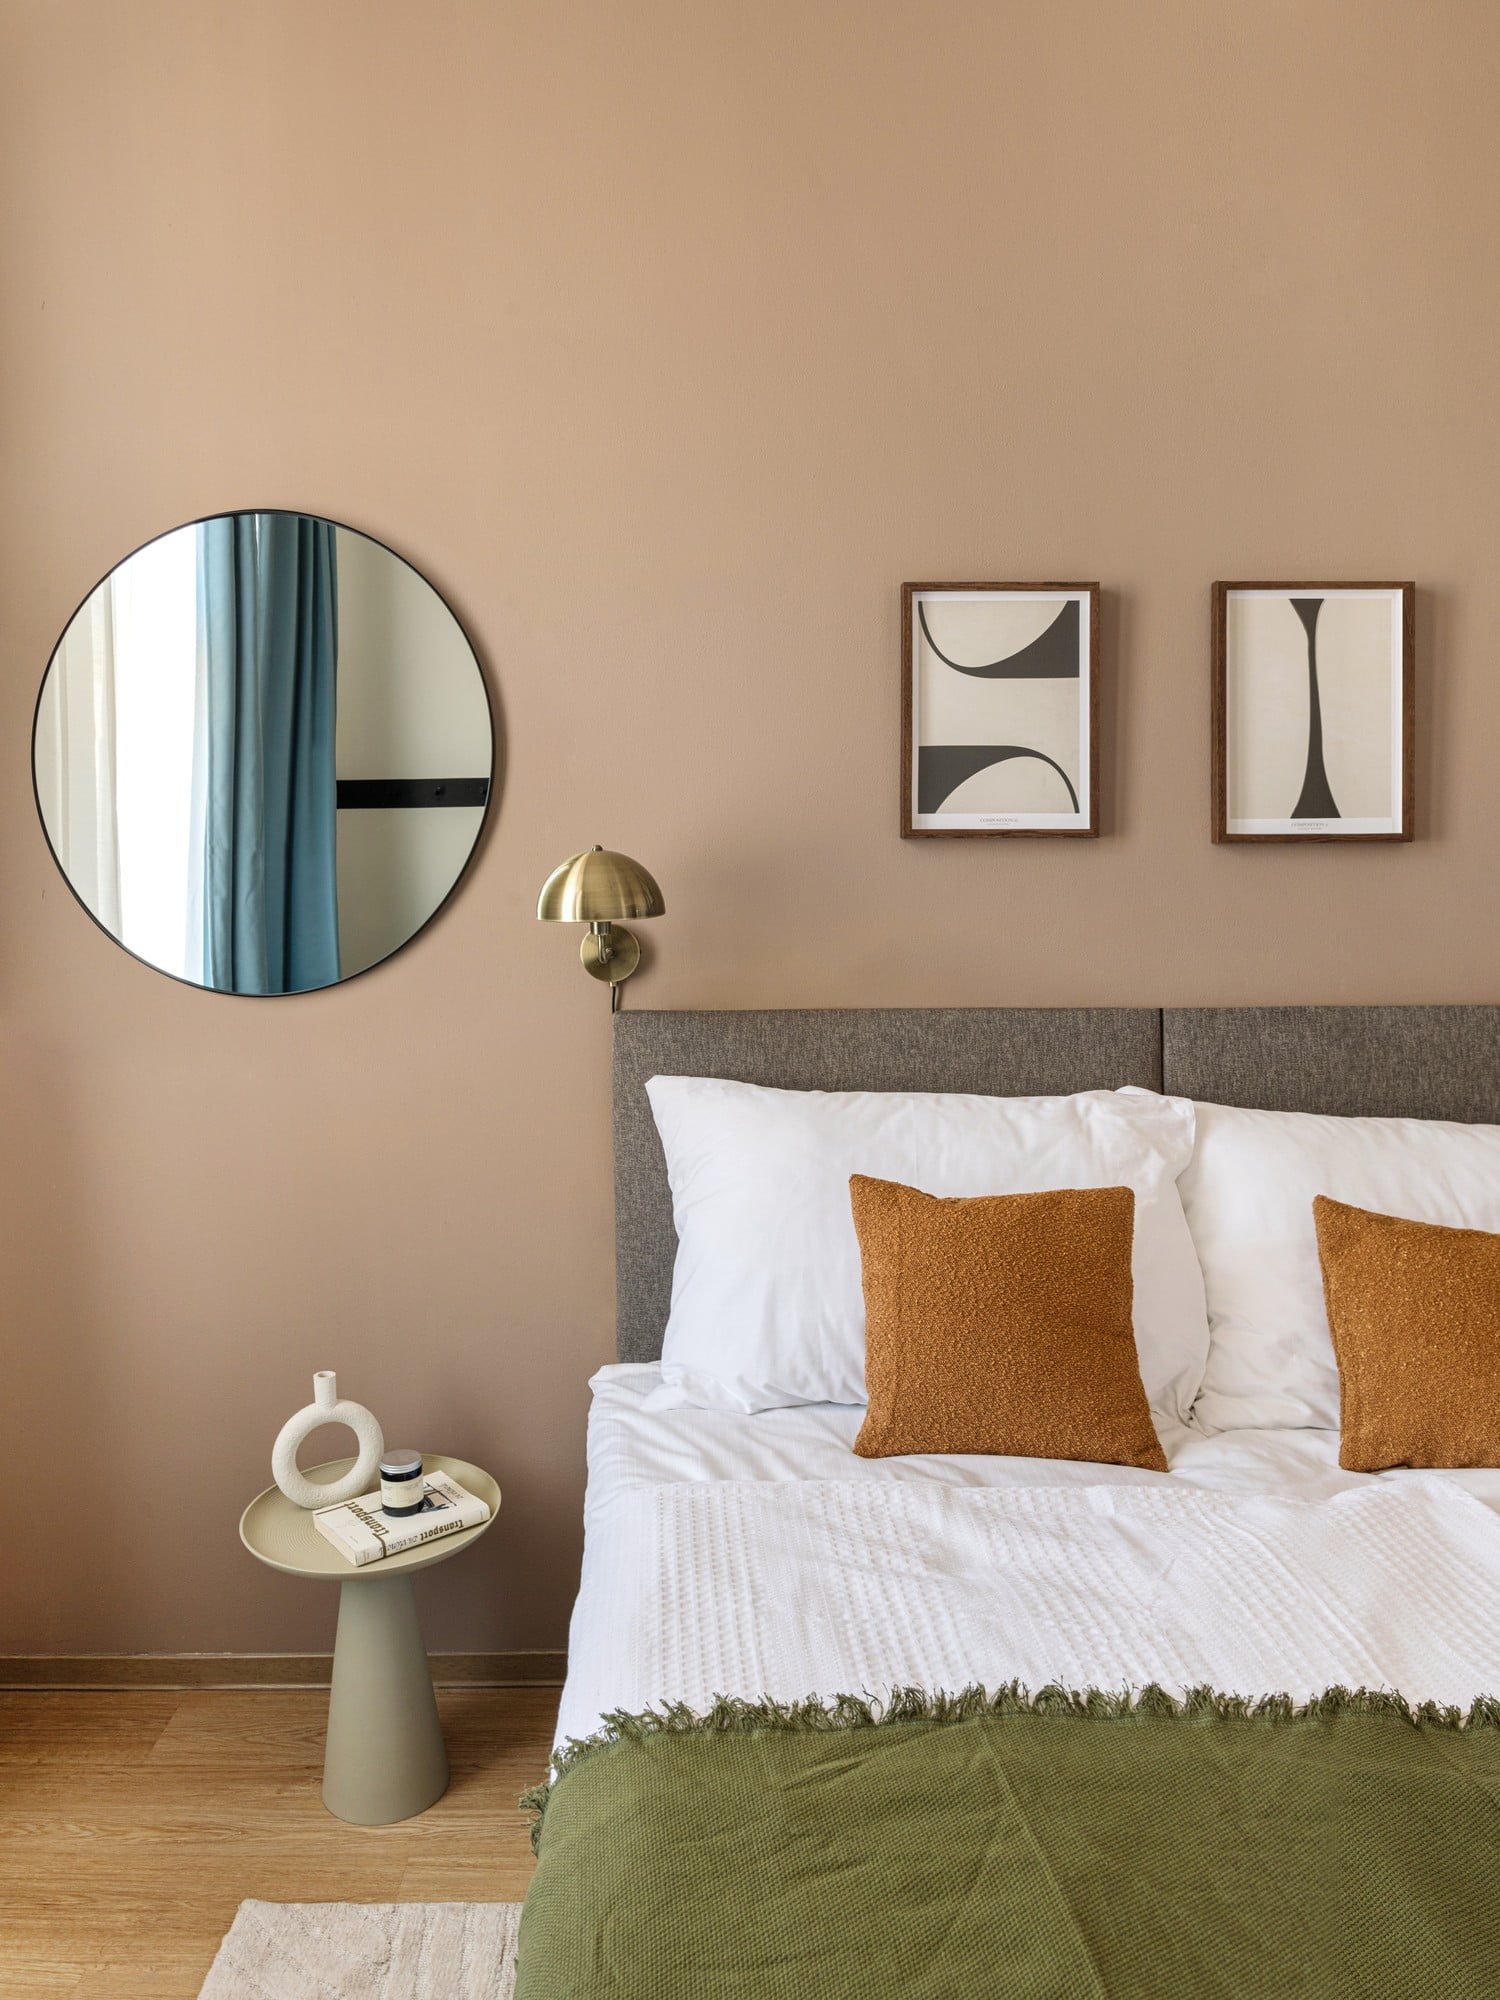 V moderni spalnici je pomembna vizualna umirjenost, ki jo lahko dosežete z izbiro pohištva s preprostimi linijami in brez nepotrebnega okrasja.